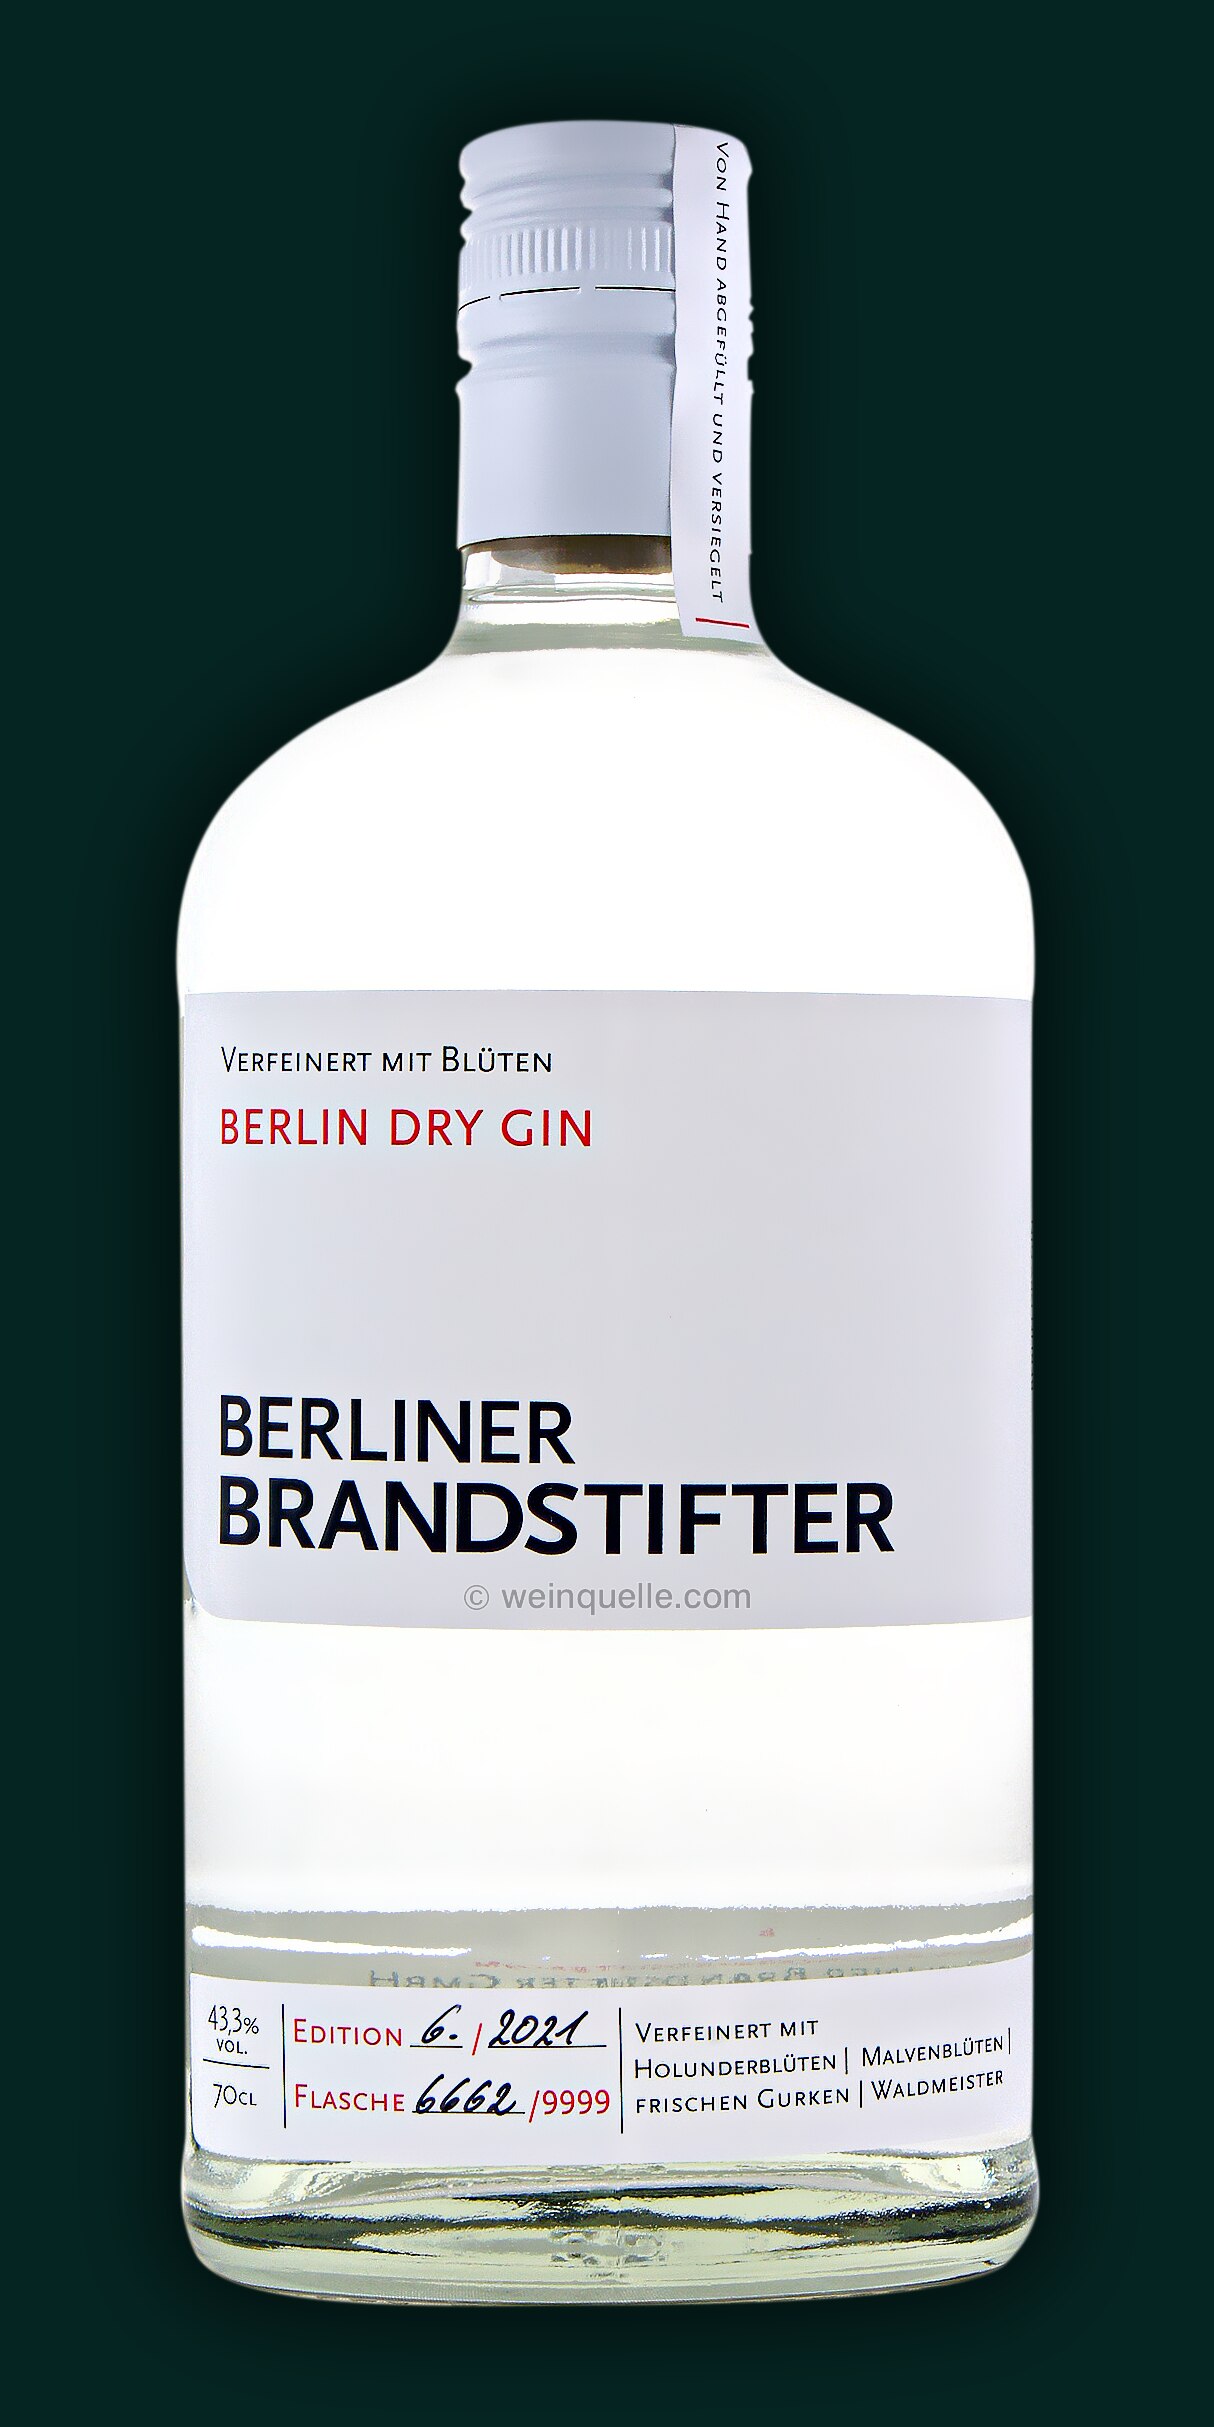 Berliner Brandstifter Dry Gin, 34,90 Lühmann - Weinquelle €